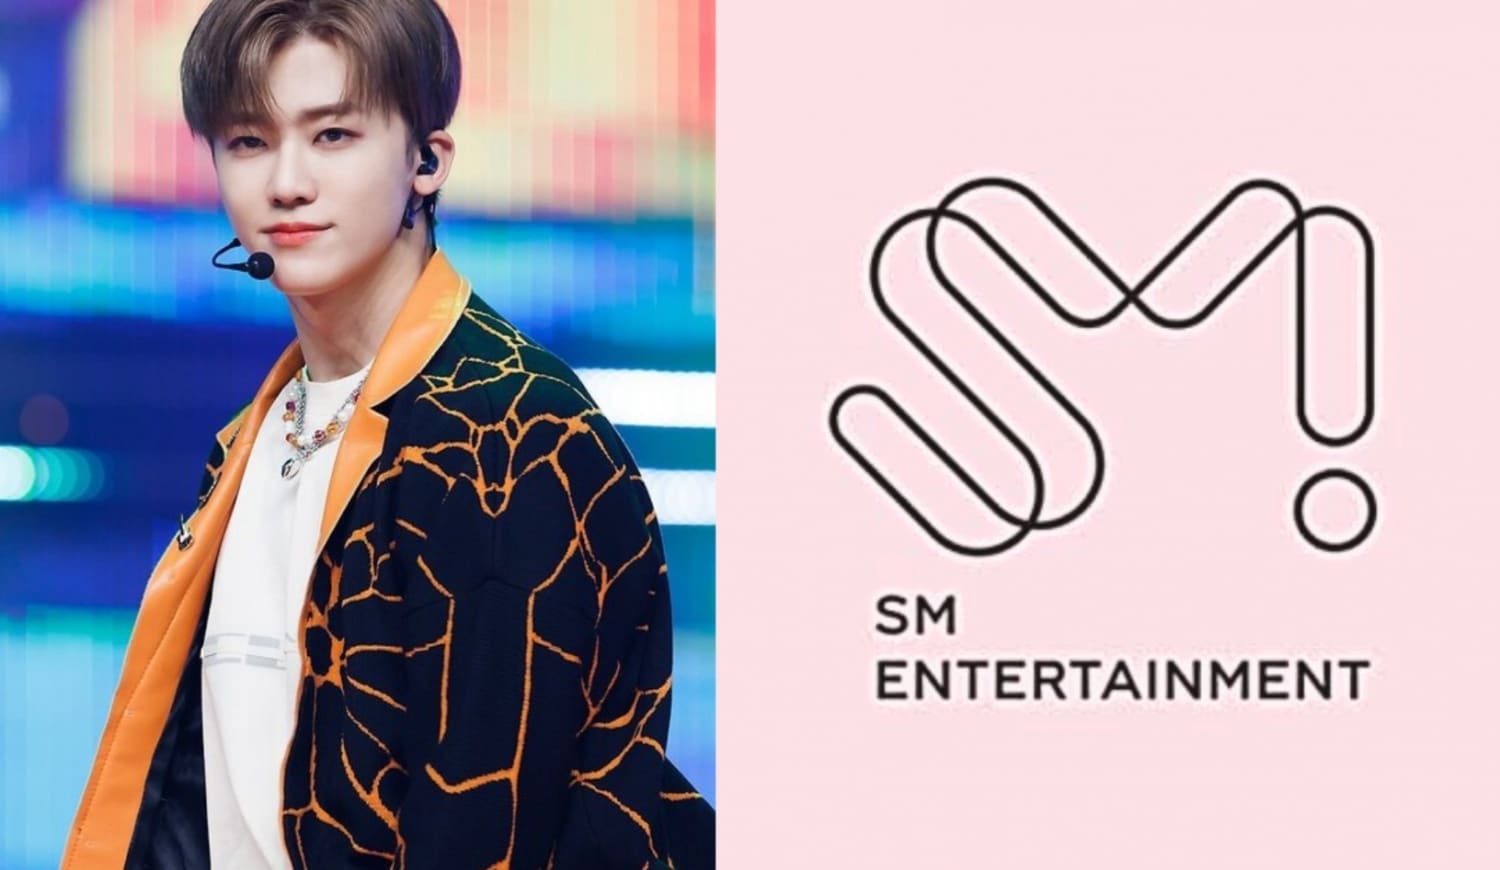 Джемин из NCT раскрыл причину, по которой его чуть не выгнали из SM Entertainment, когда он был стажёром